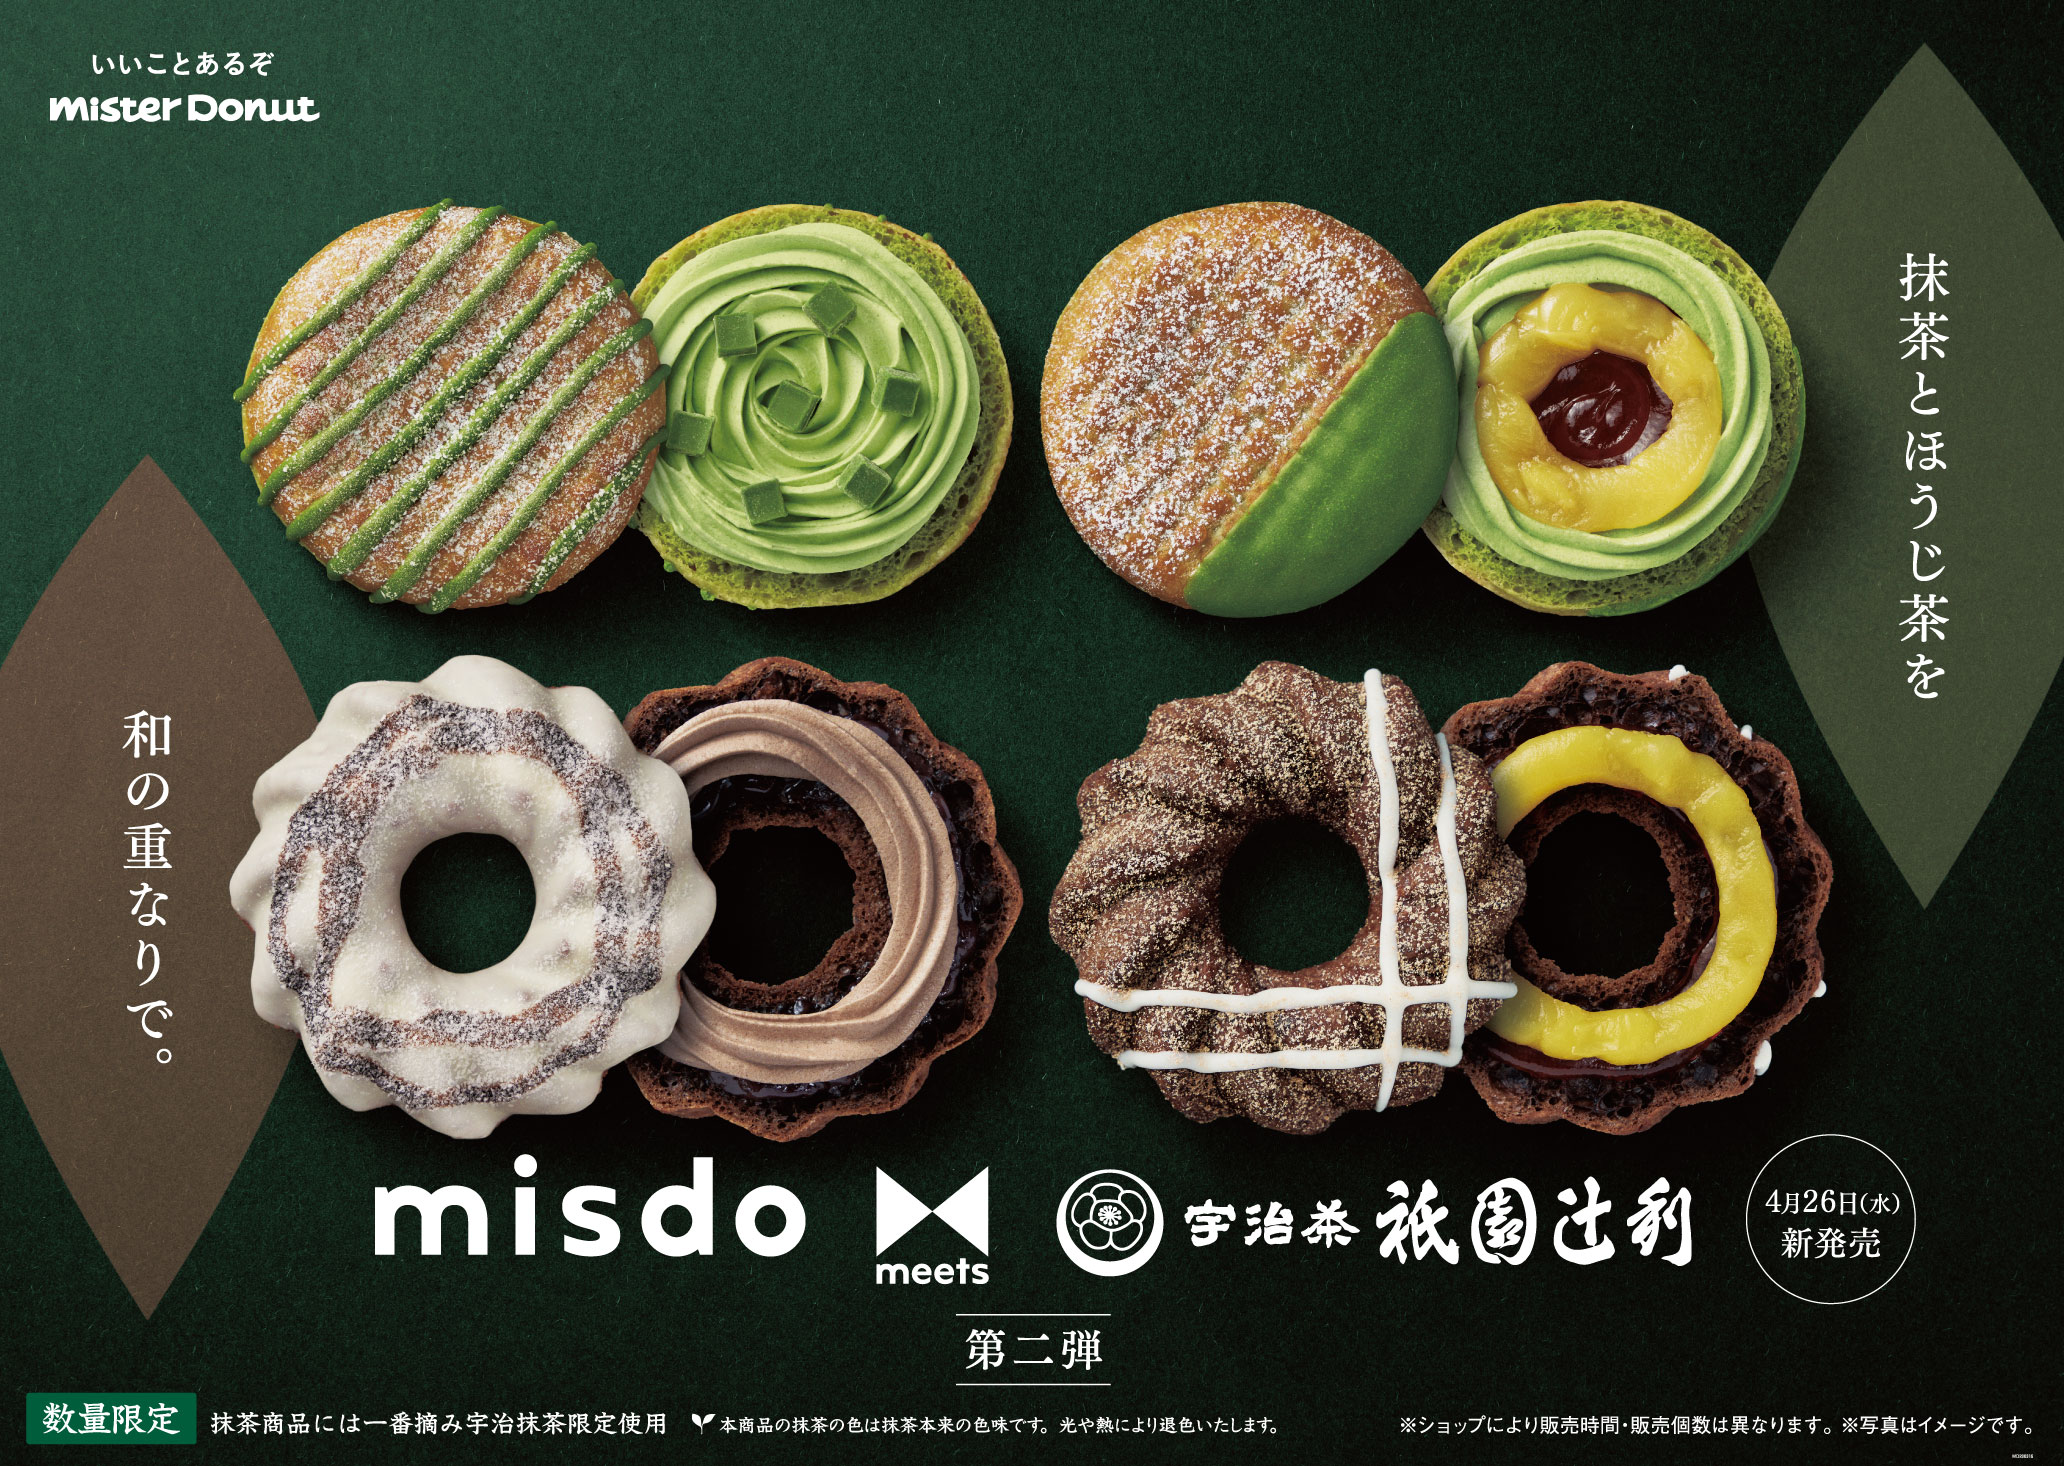 ミスタードーナツ「misdo meets 祇園辻利第2弾」ドーナツ4商品